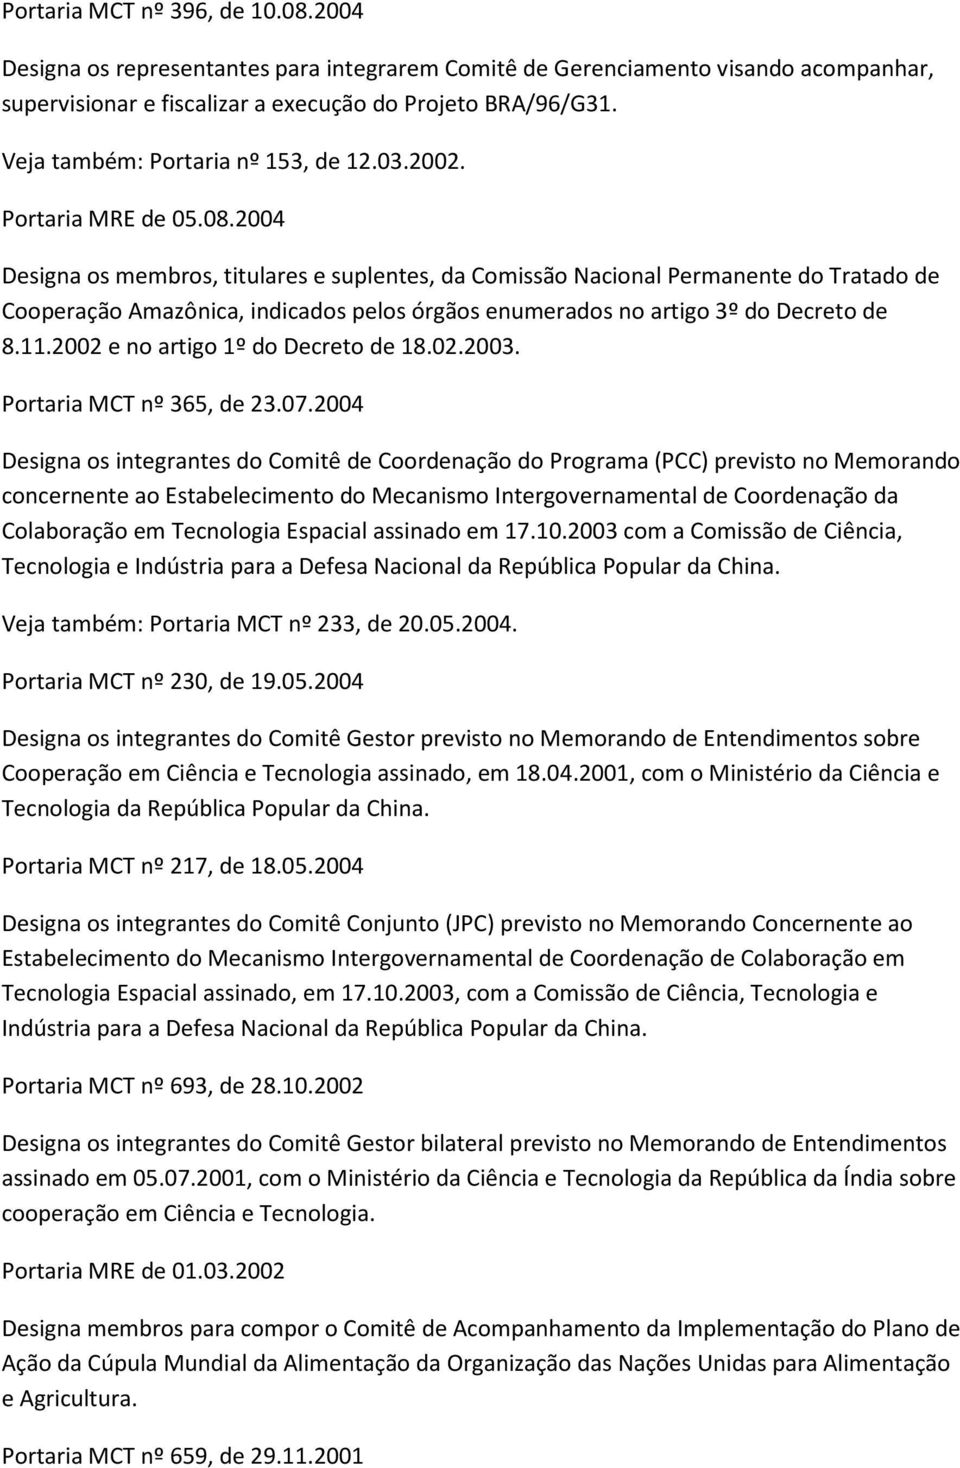 2004 Designa os membros, titulares e suplentes, da Comissão Nacional Permanente do Tratado de Cooperação Amazônica, indicados pelos órgãos enumerados no artigo 3º do Decreto de 8.11.